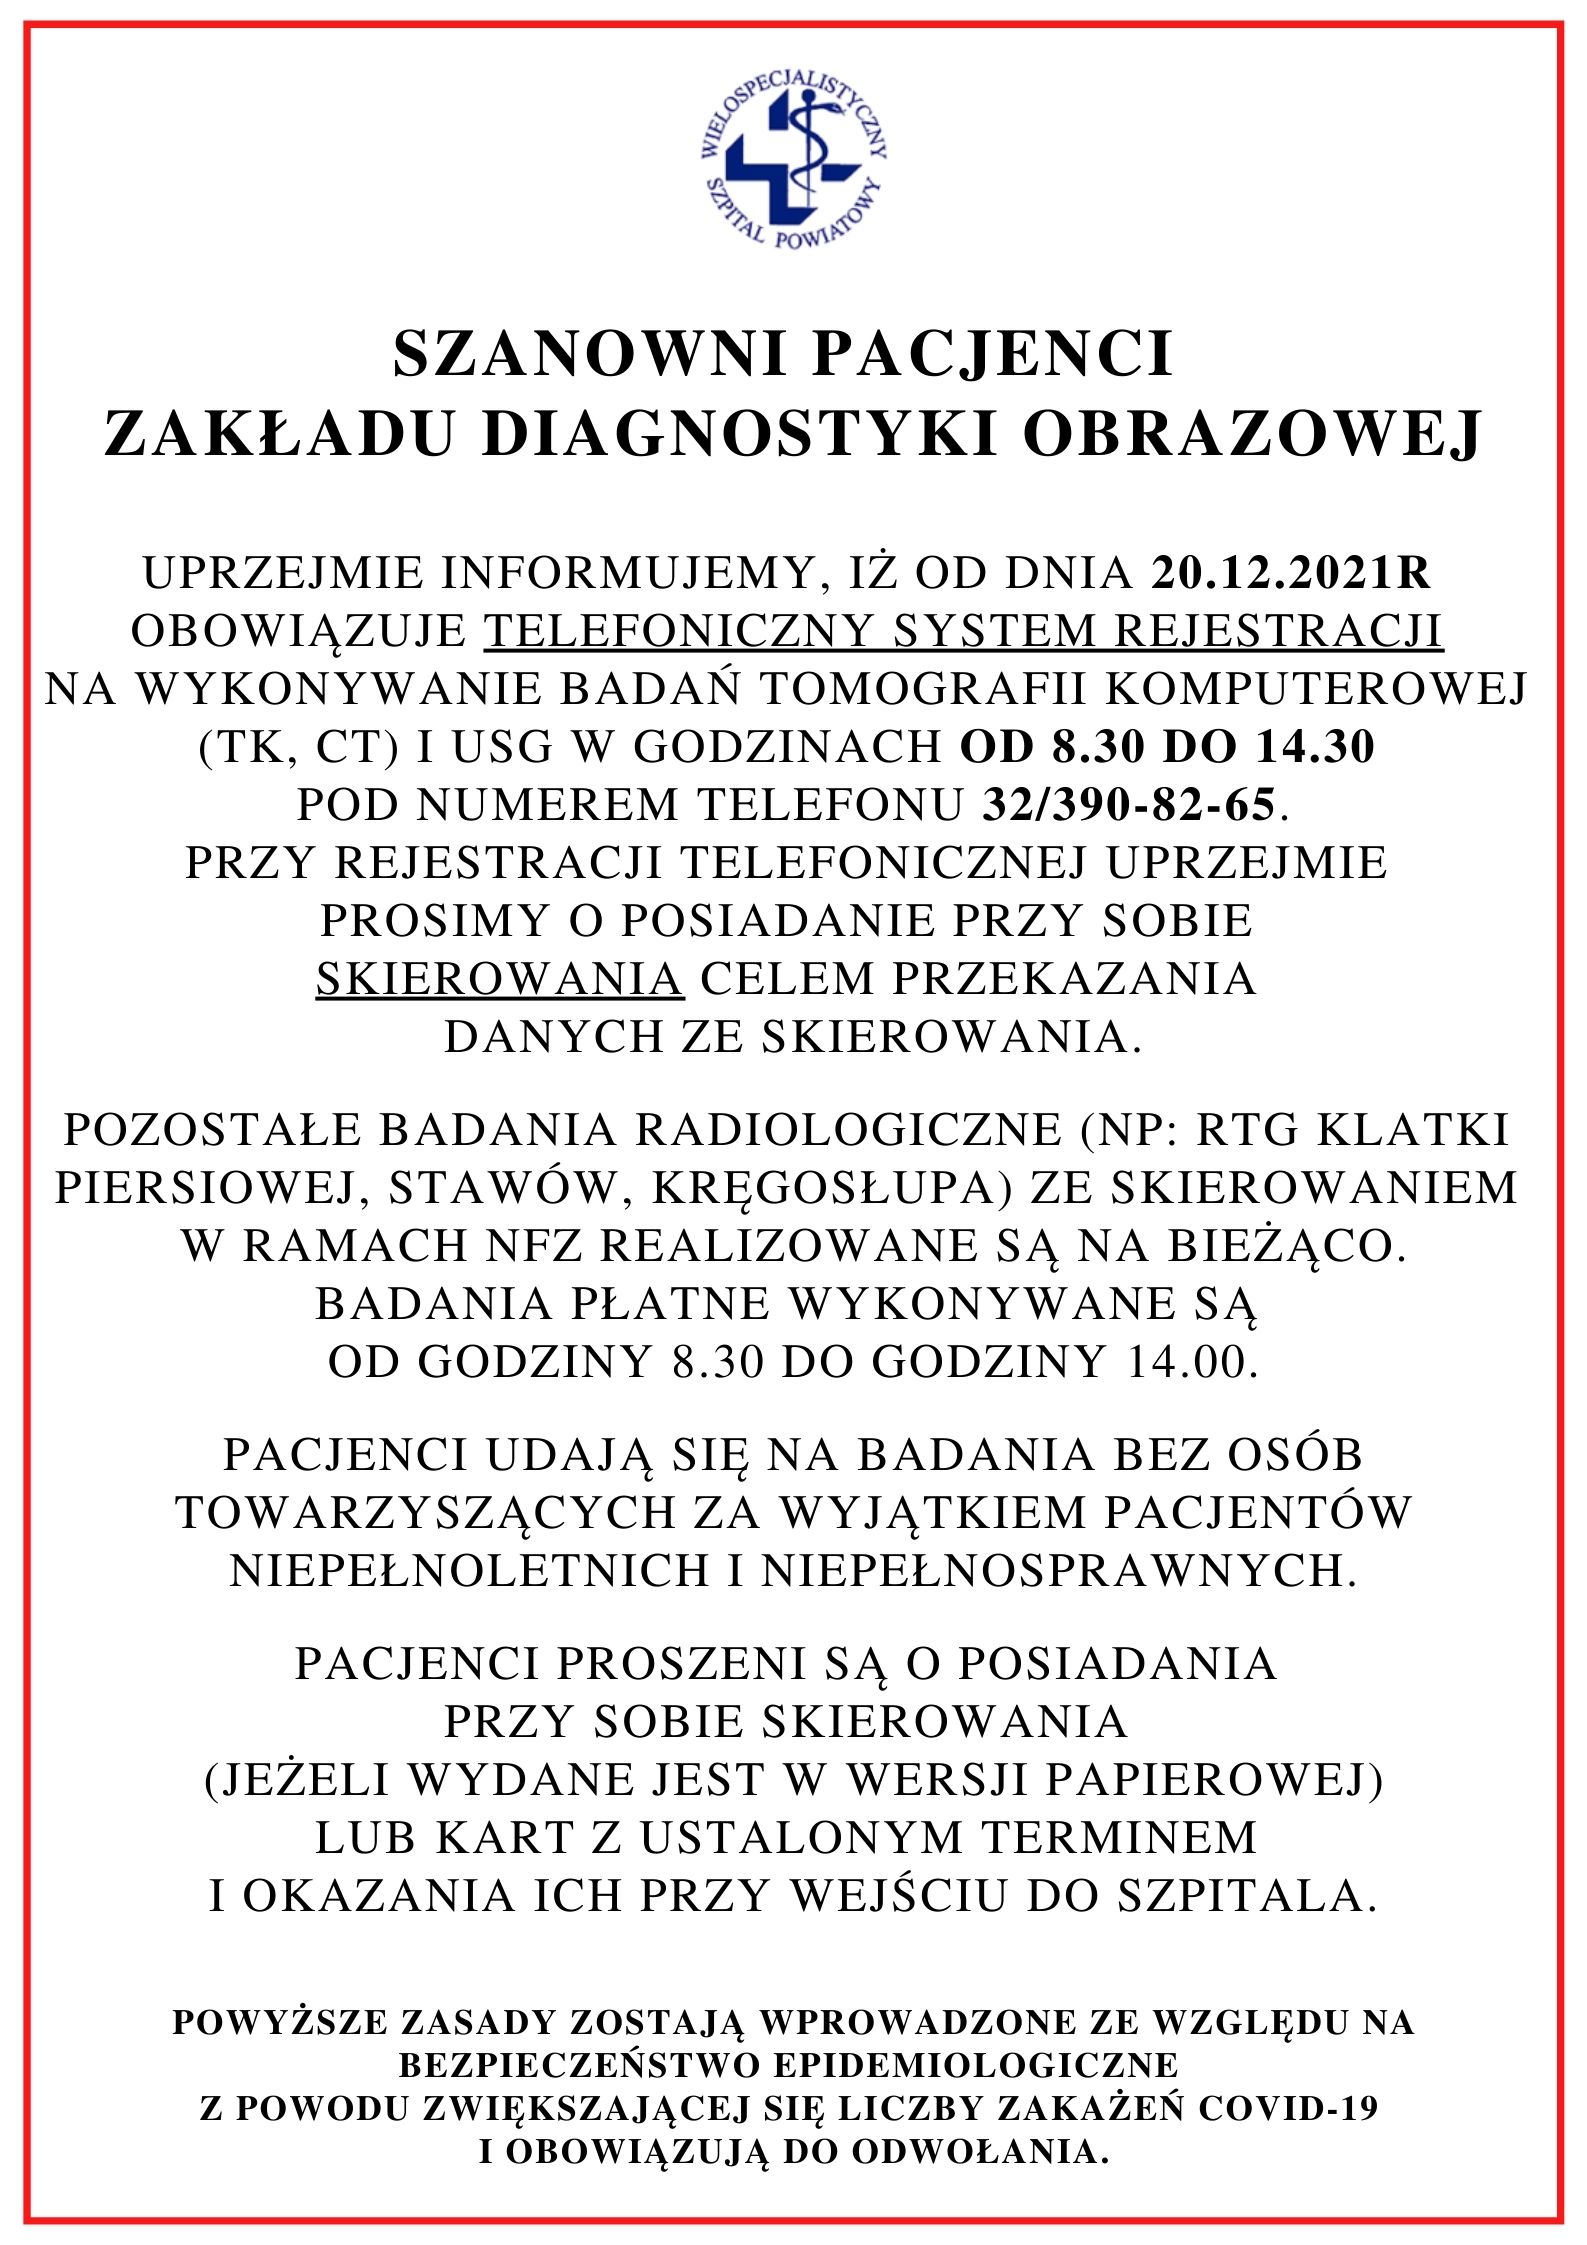 RTG, Endoskopia – obowiązuje rejestracja telefoniczna